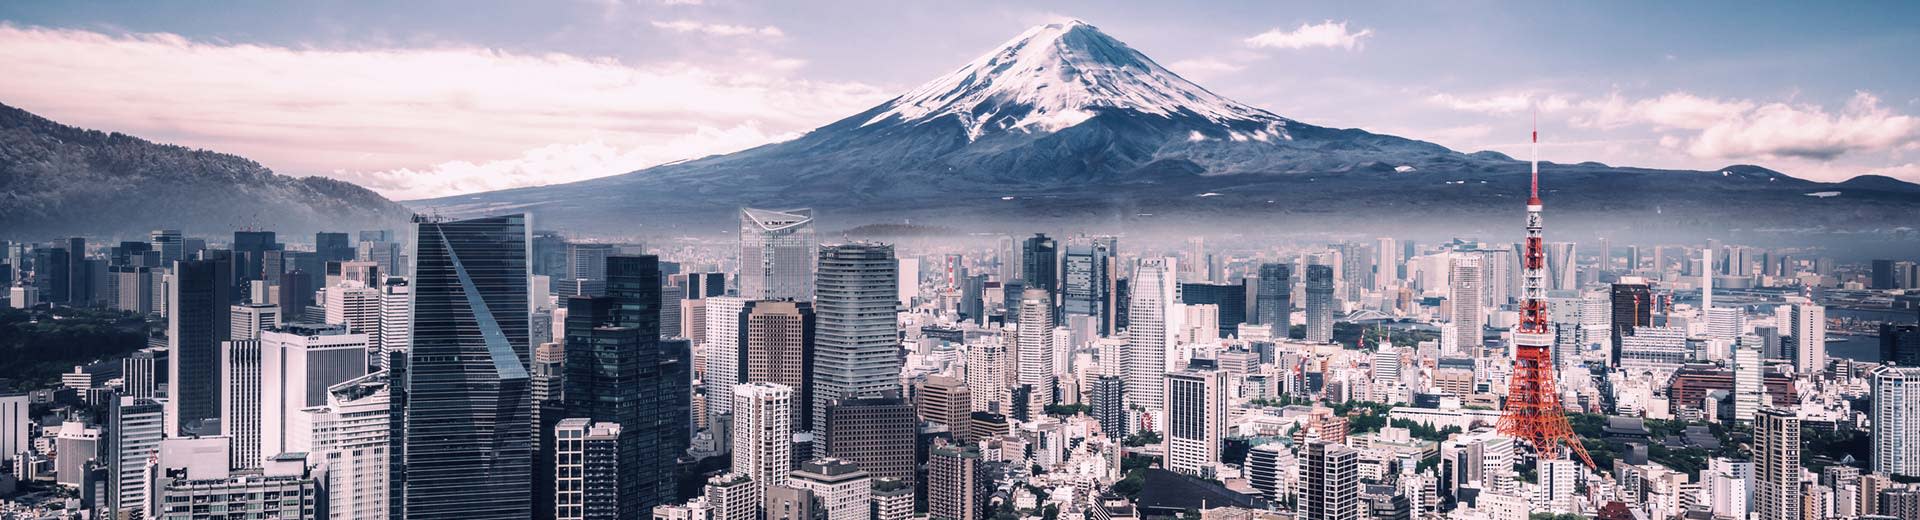 Die weitläufige Stadt Tokio liegt vor dem berühmten Mount Fuji mit mehr Wolkenkratzern, als Sie im Vordergrund zählen können.